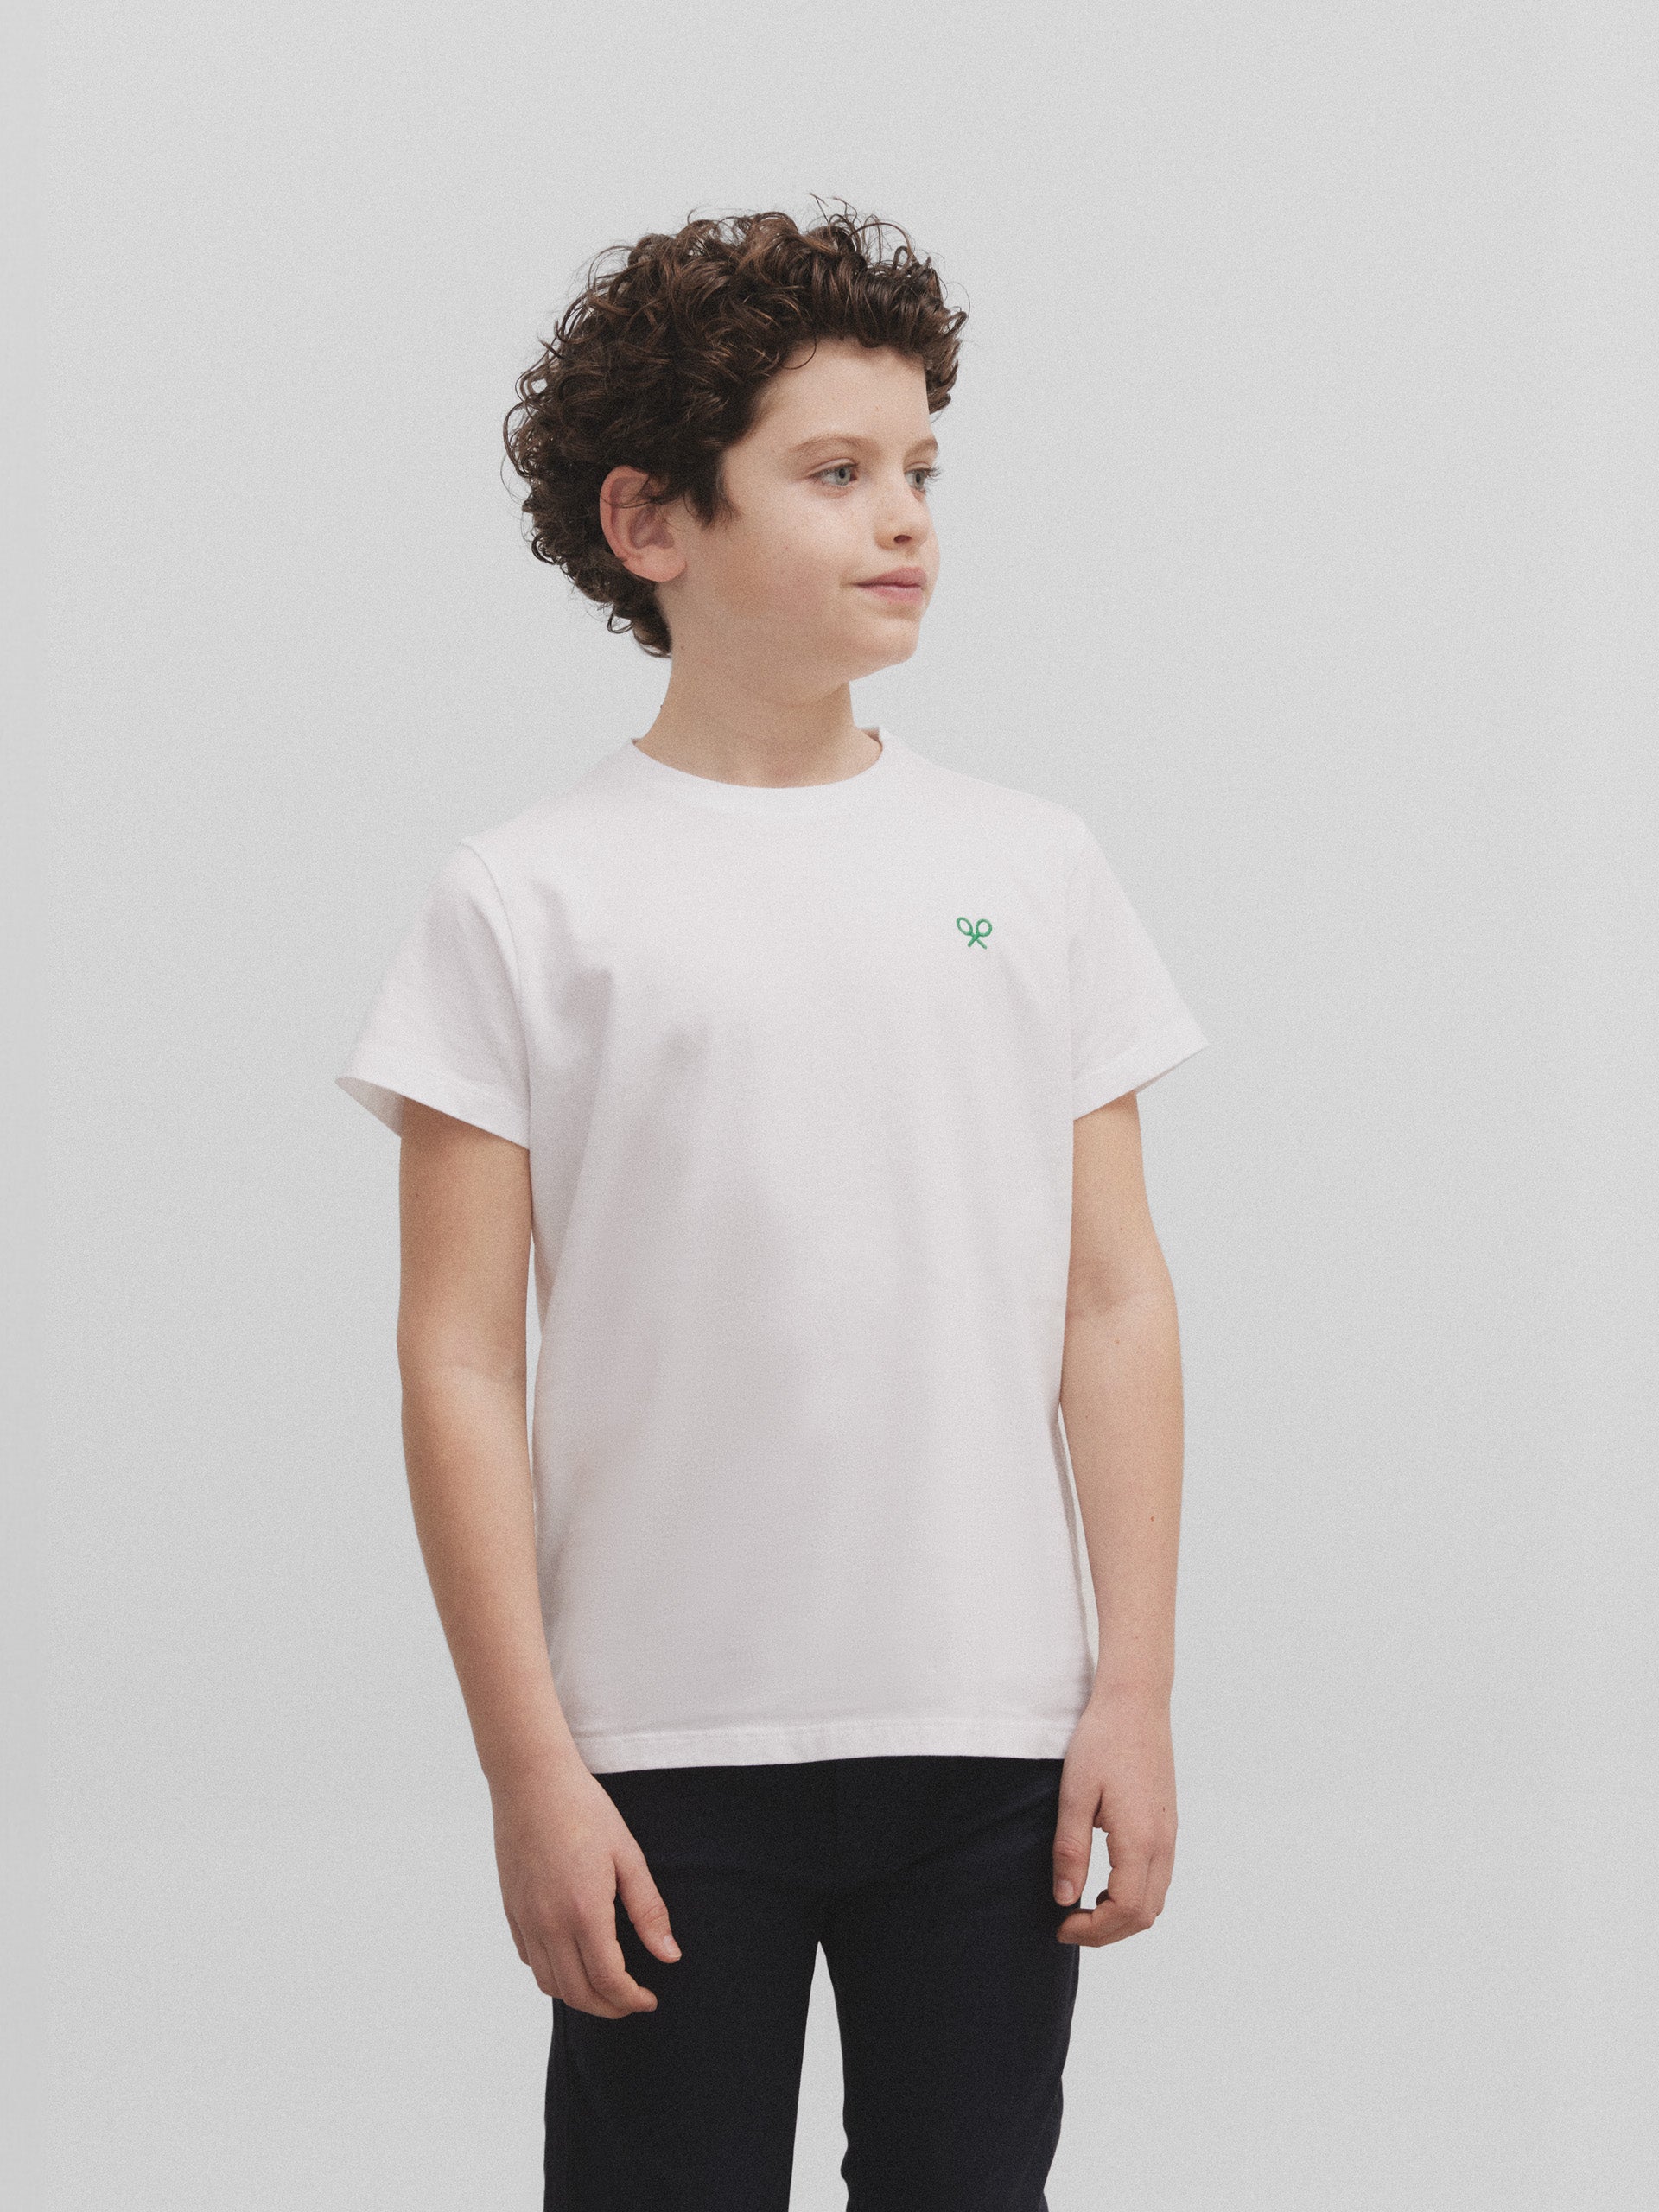 Camiseta kids raqueta trasera silbon betis blanca